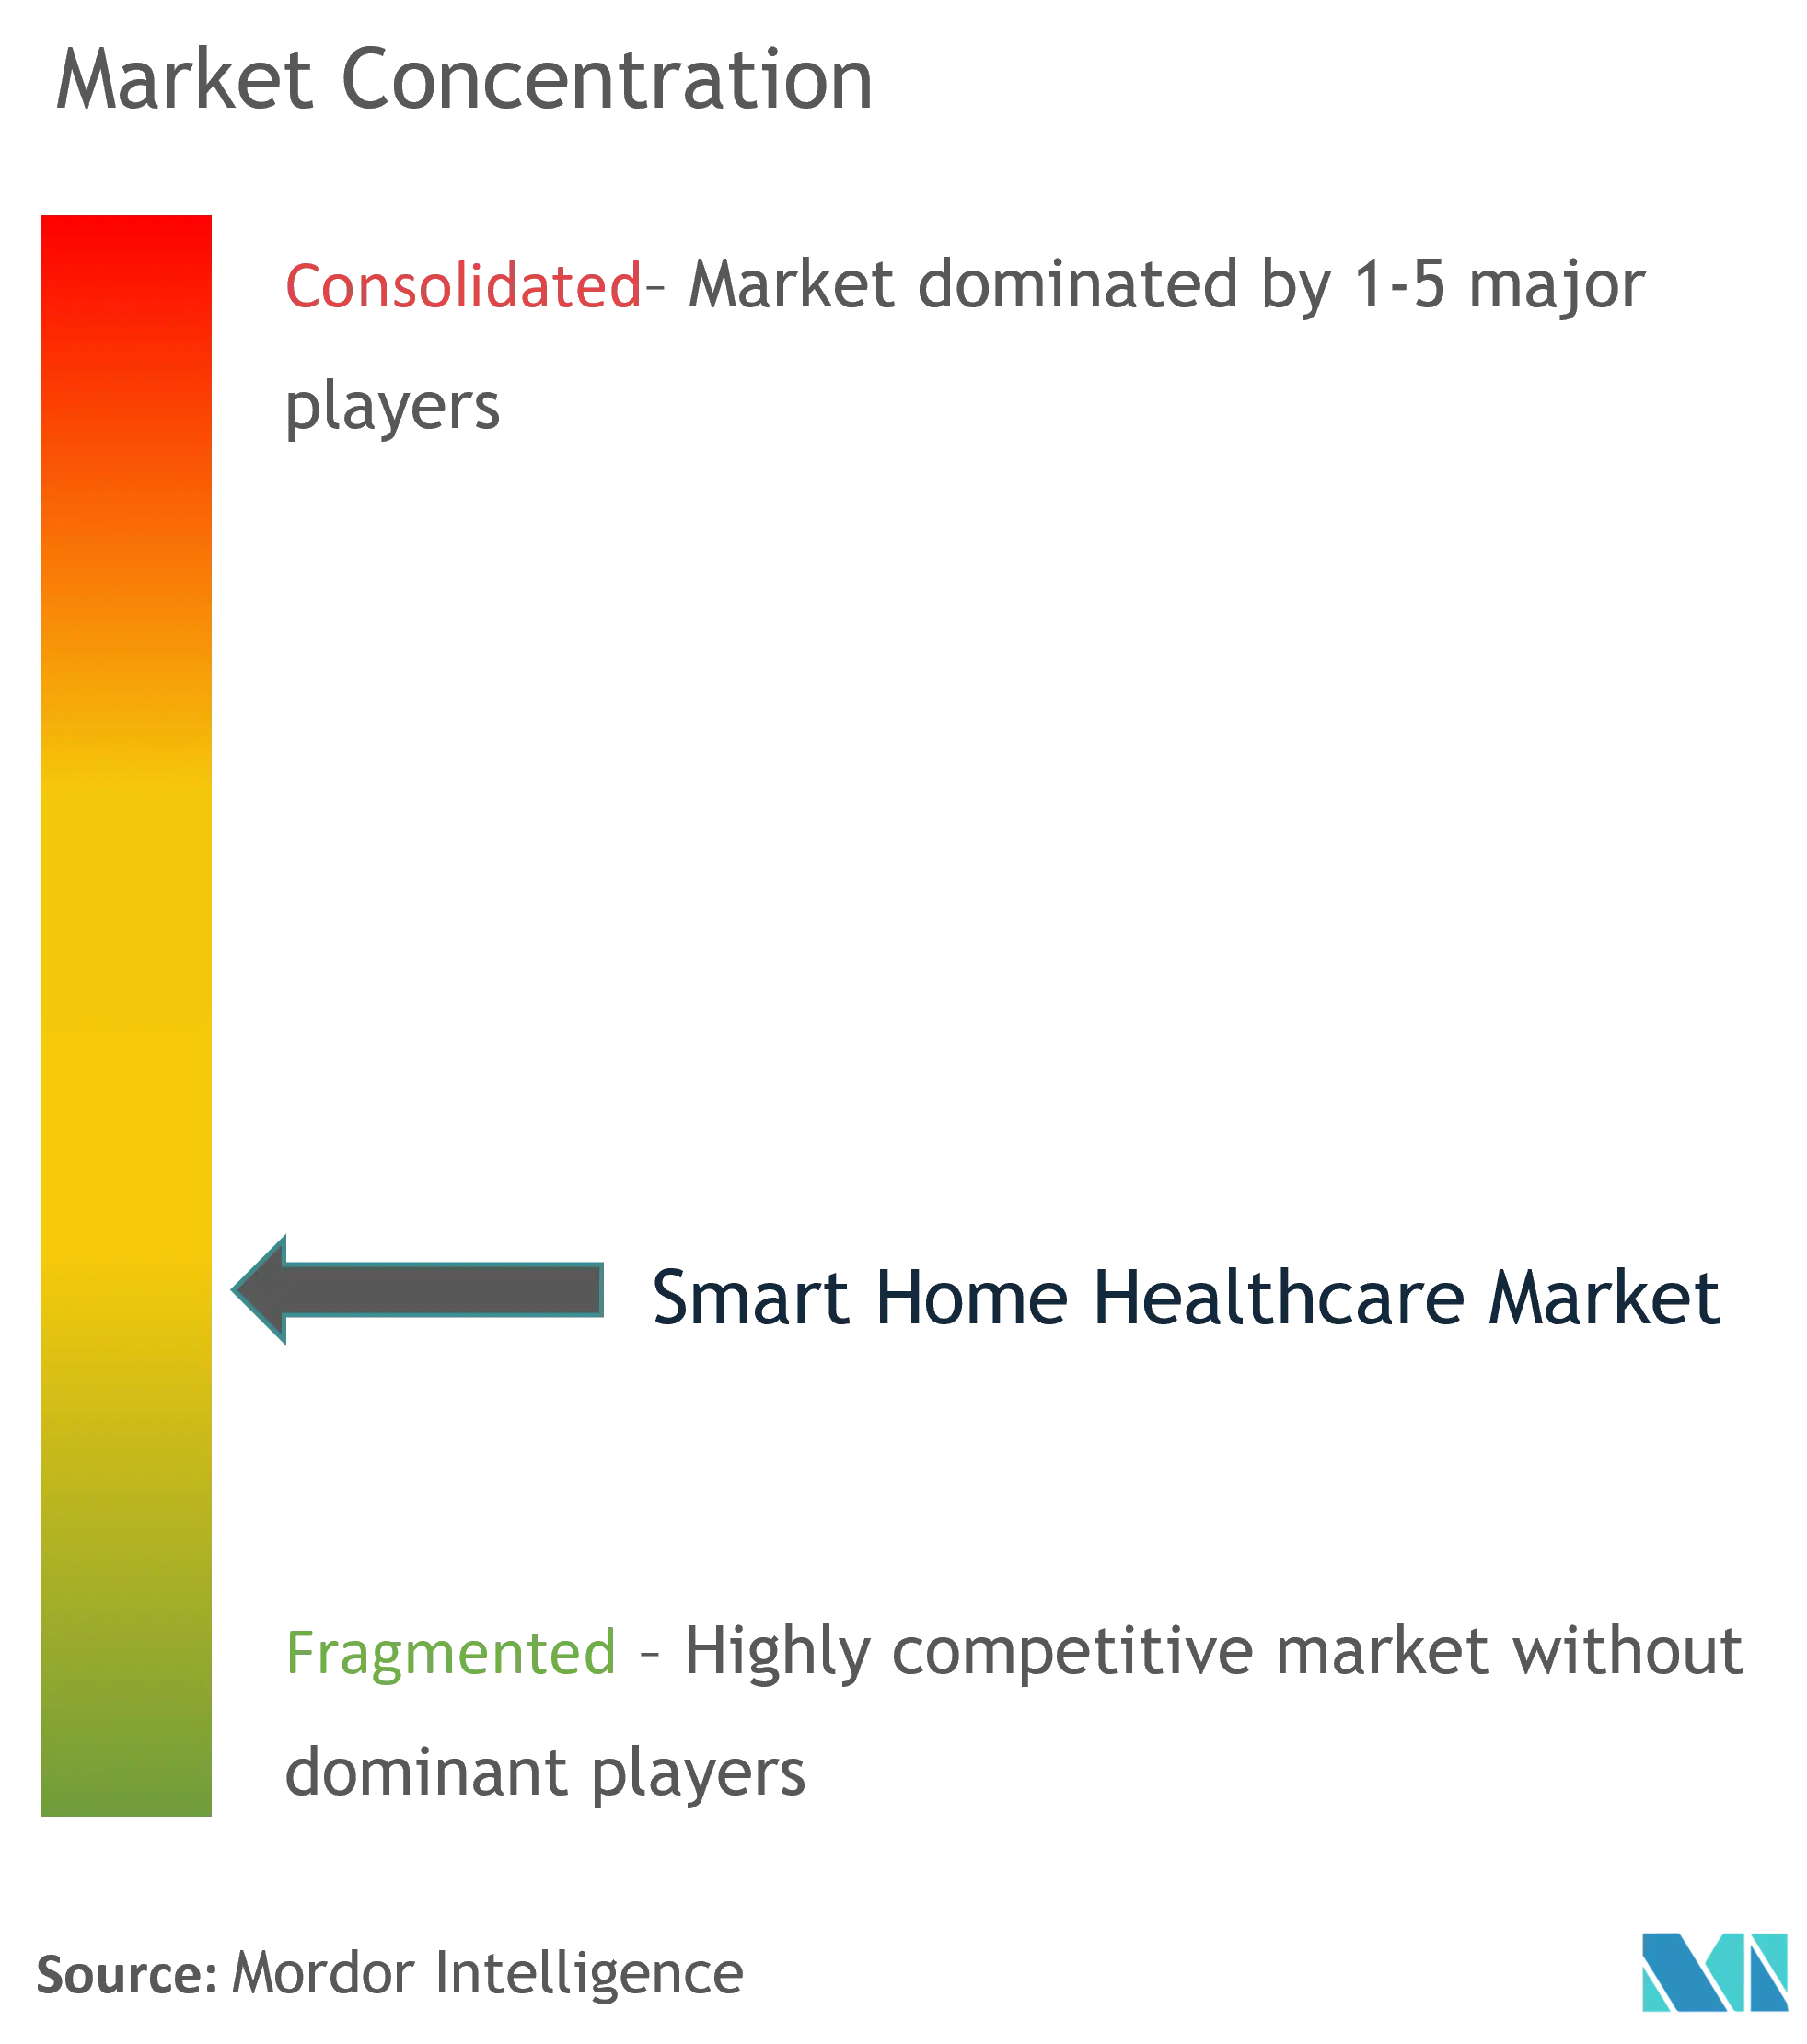 Smart Home Healthcare Market - Market Concentration.png